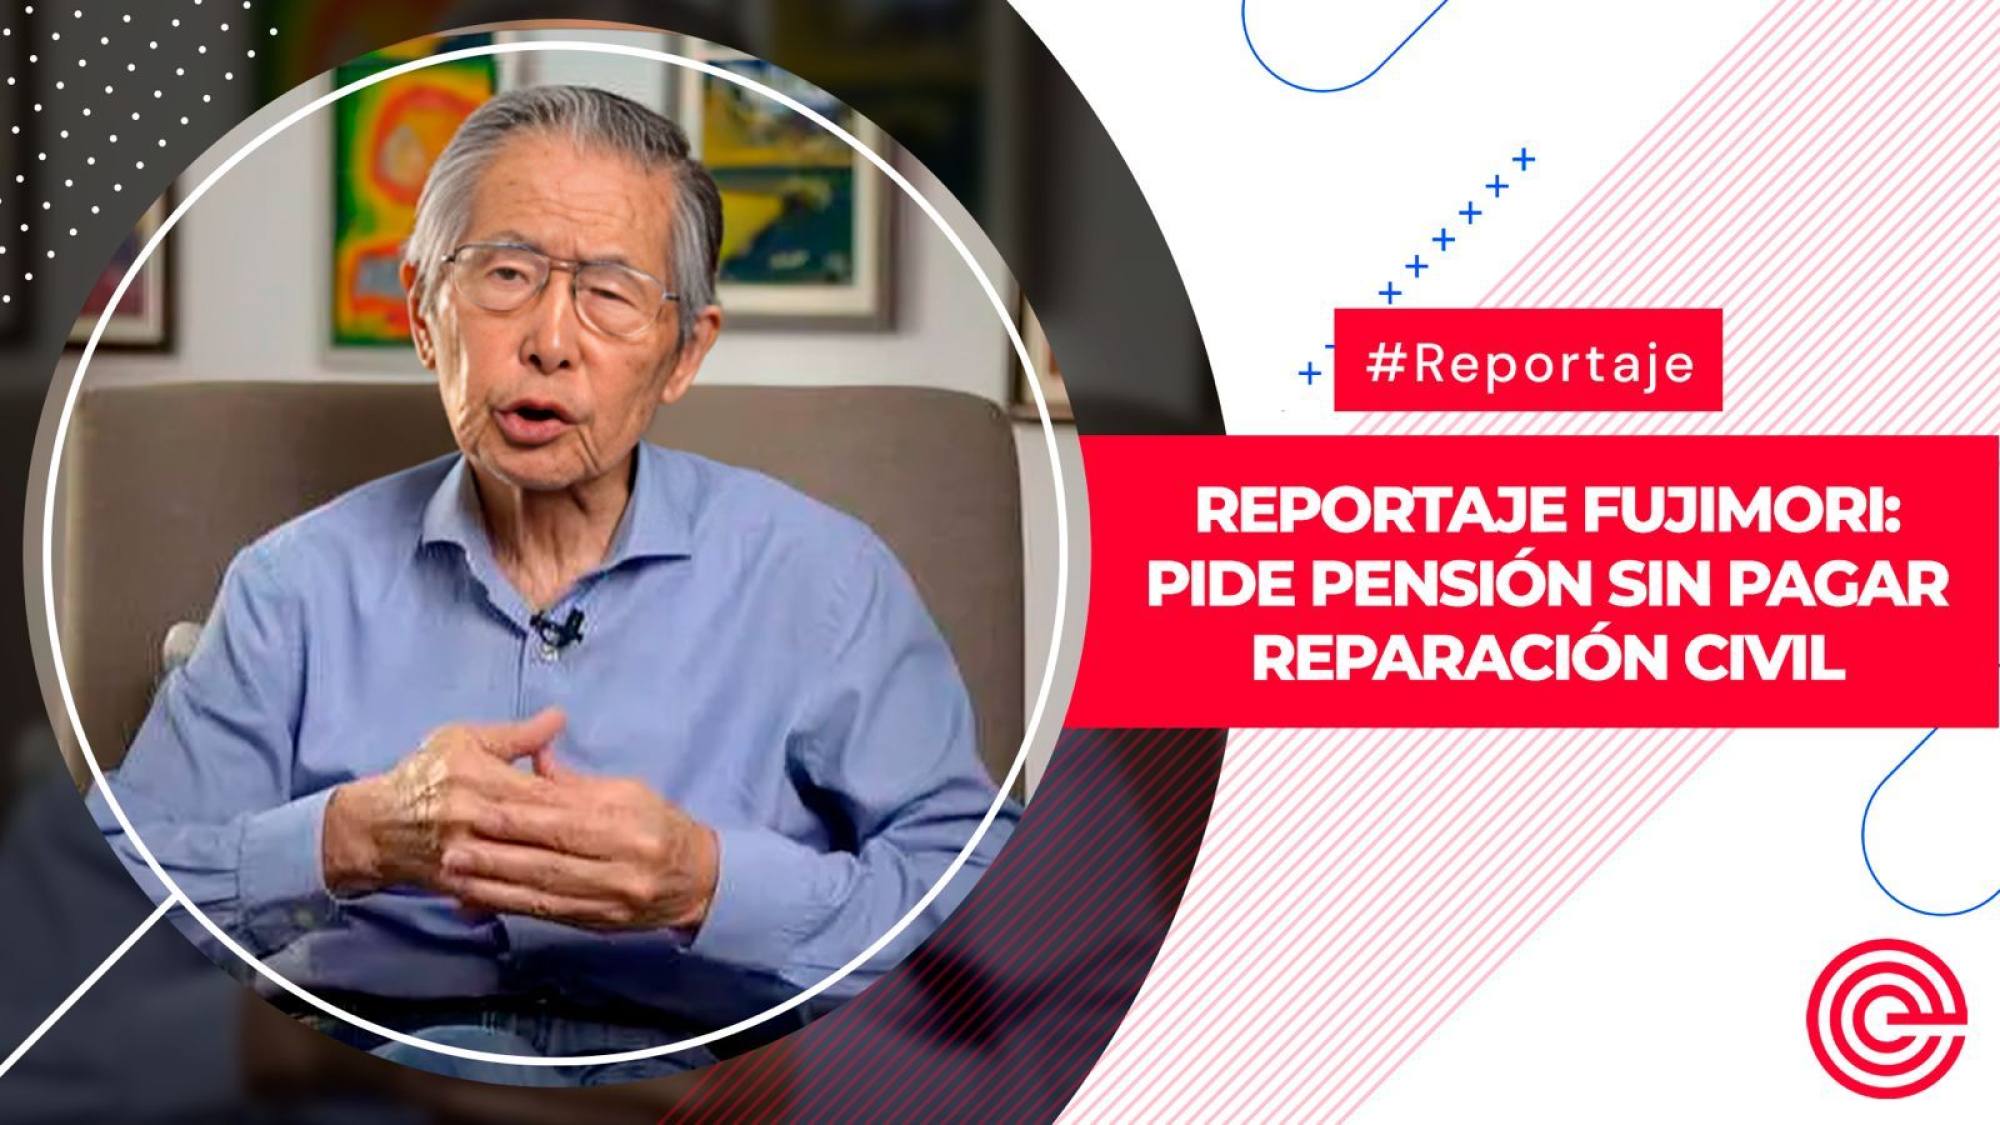 Fujimori: pide pensión sin pagar reparación civil, Epicentro TV